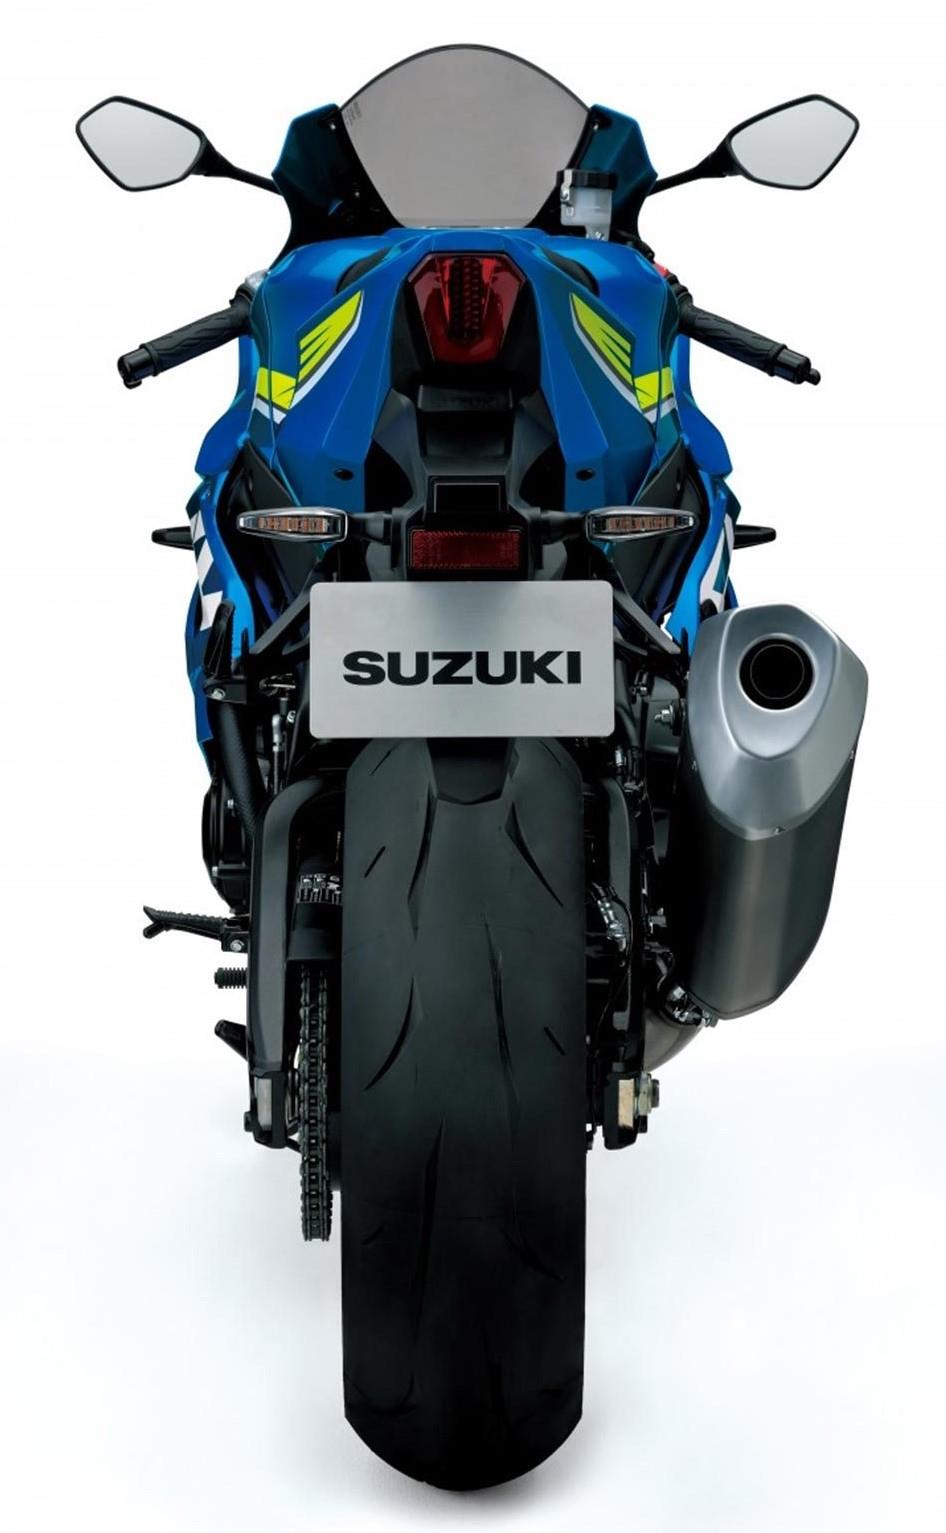 Suzuki Gsx R1000 Price Specs Top Speed Mileage In India